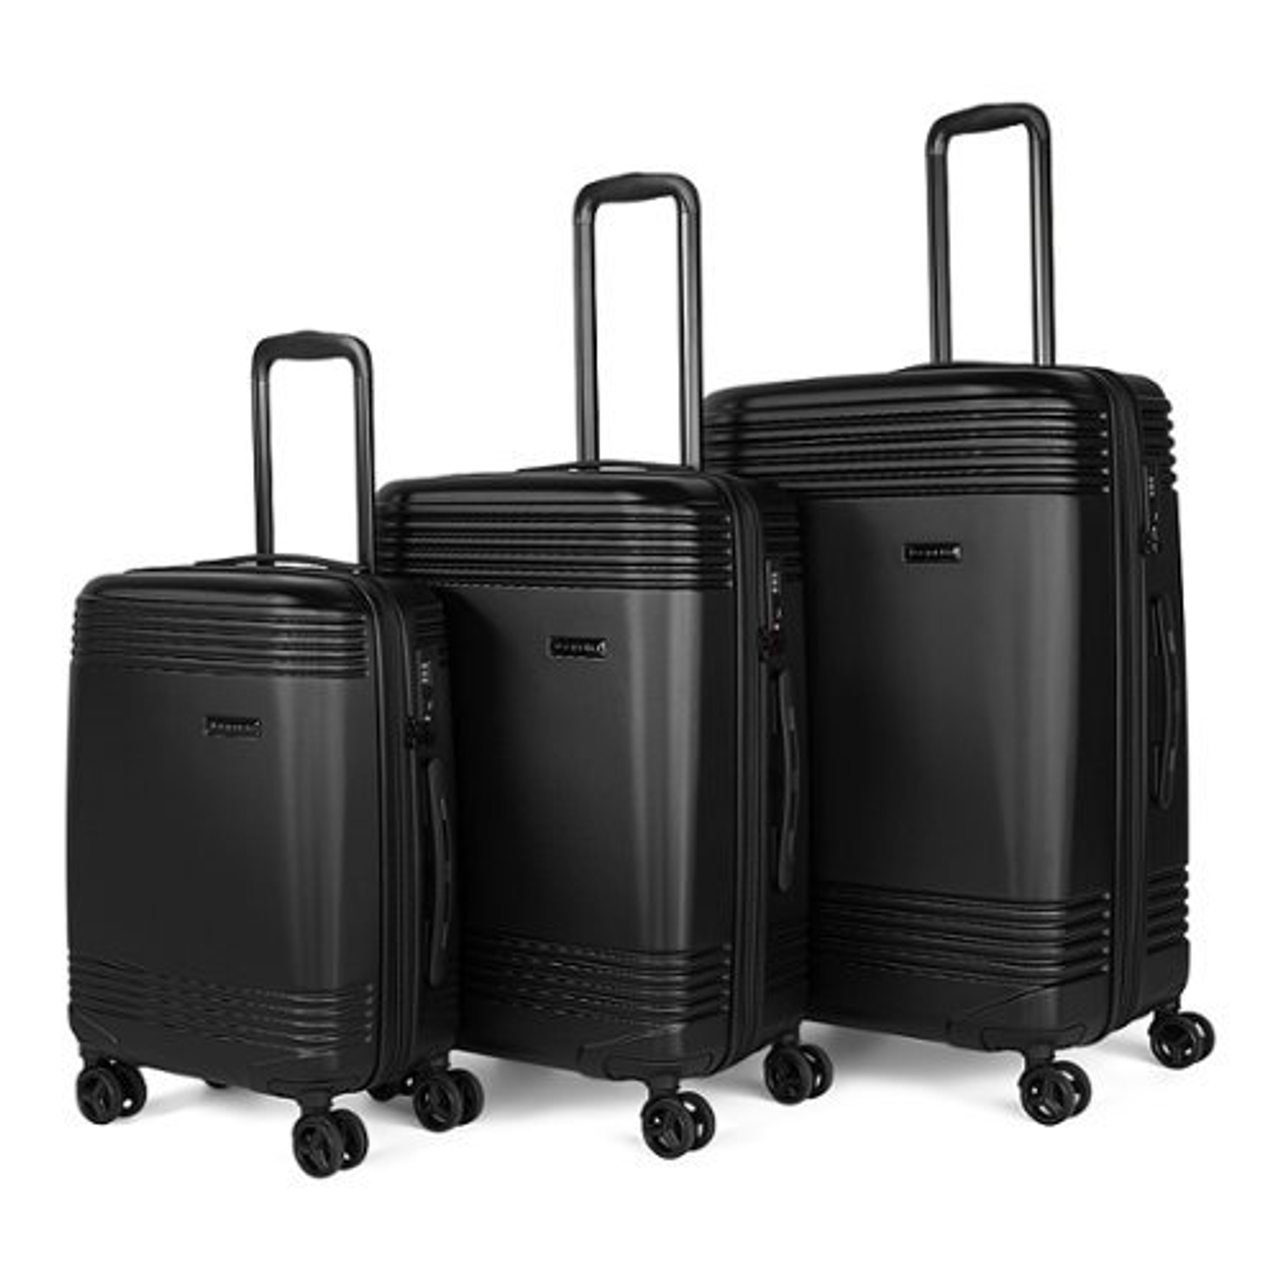 Bugatti - Nashville Hardside 3 Piece Luggage Set - Black